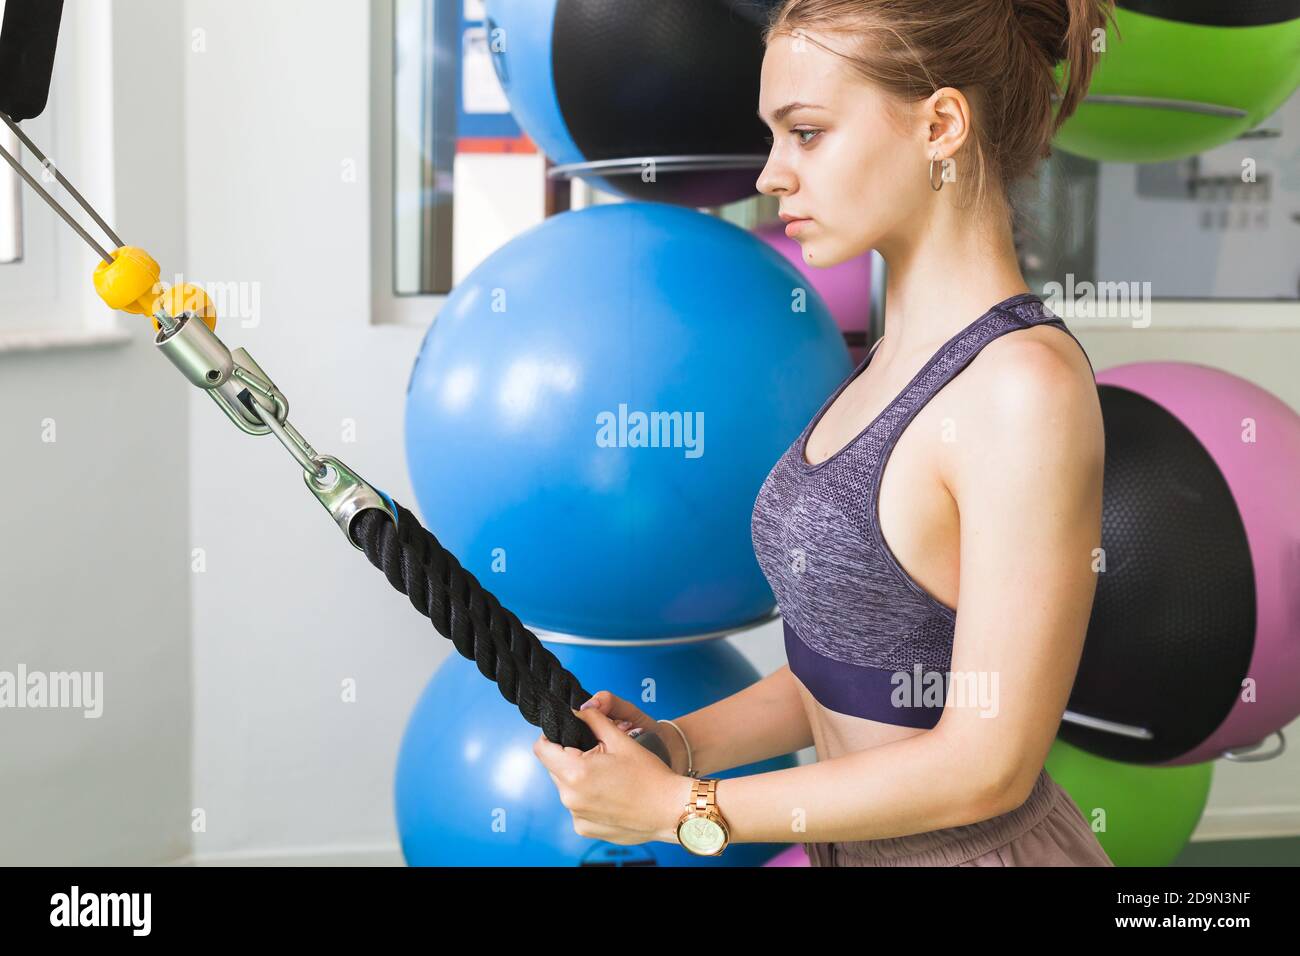 Junge europäische blonde sportliche Mädchen tut eine Übung in einem Fitnessraum Stockfoto